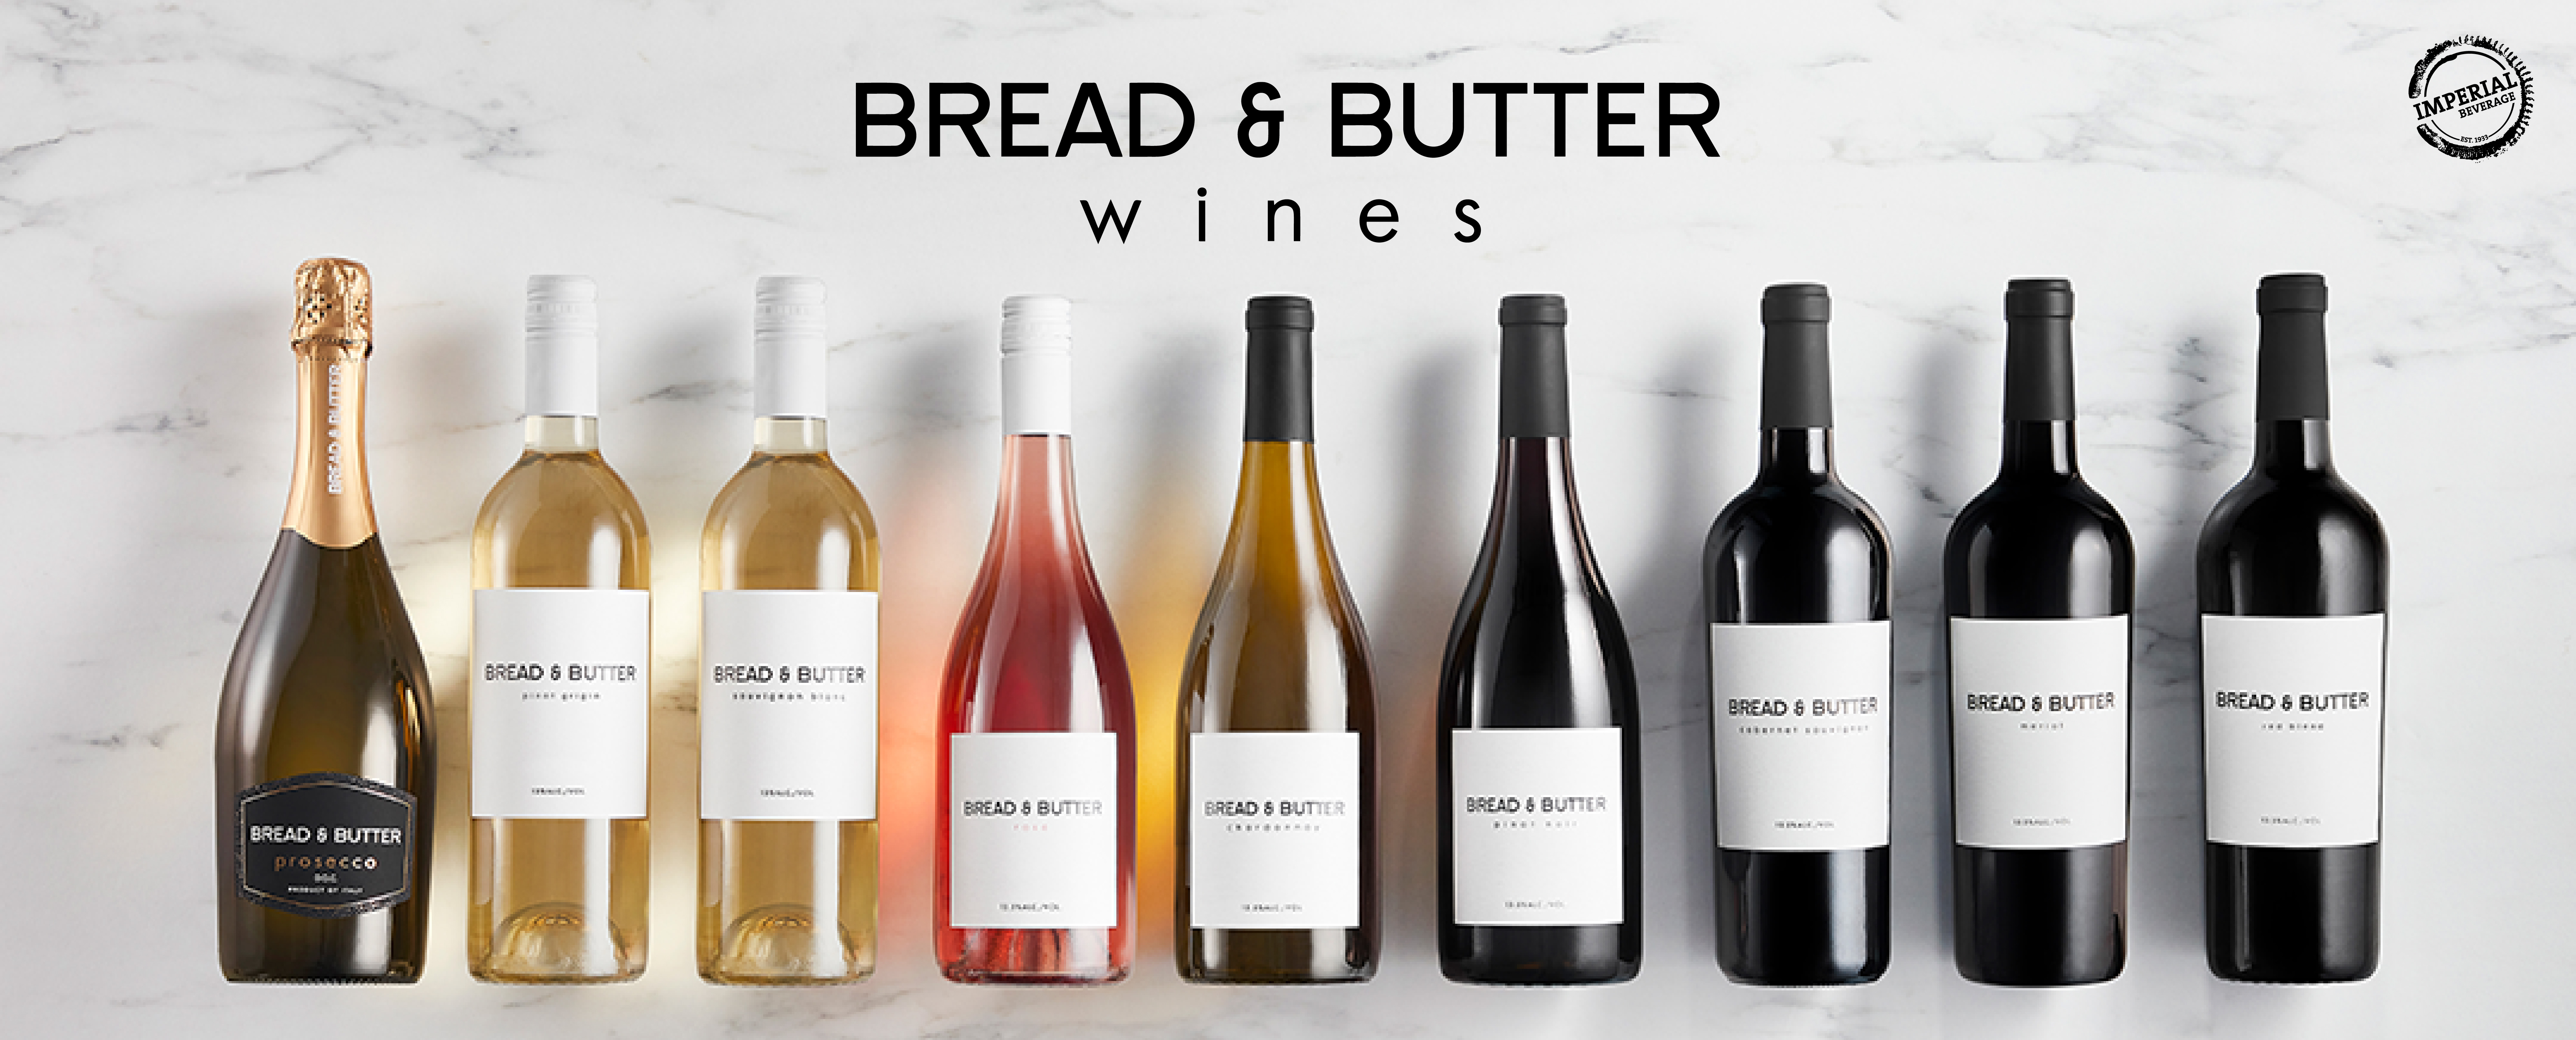 Bread&Butter, Bread and Butter, Wine, Chardonnay, Prosecco, Sauvignon blanc, napa valley, California wine